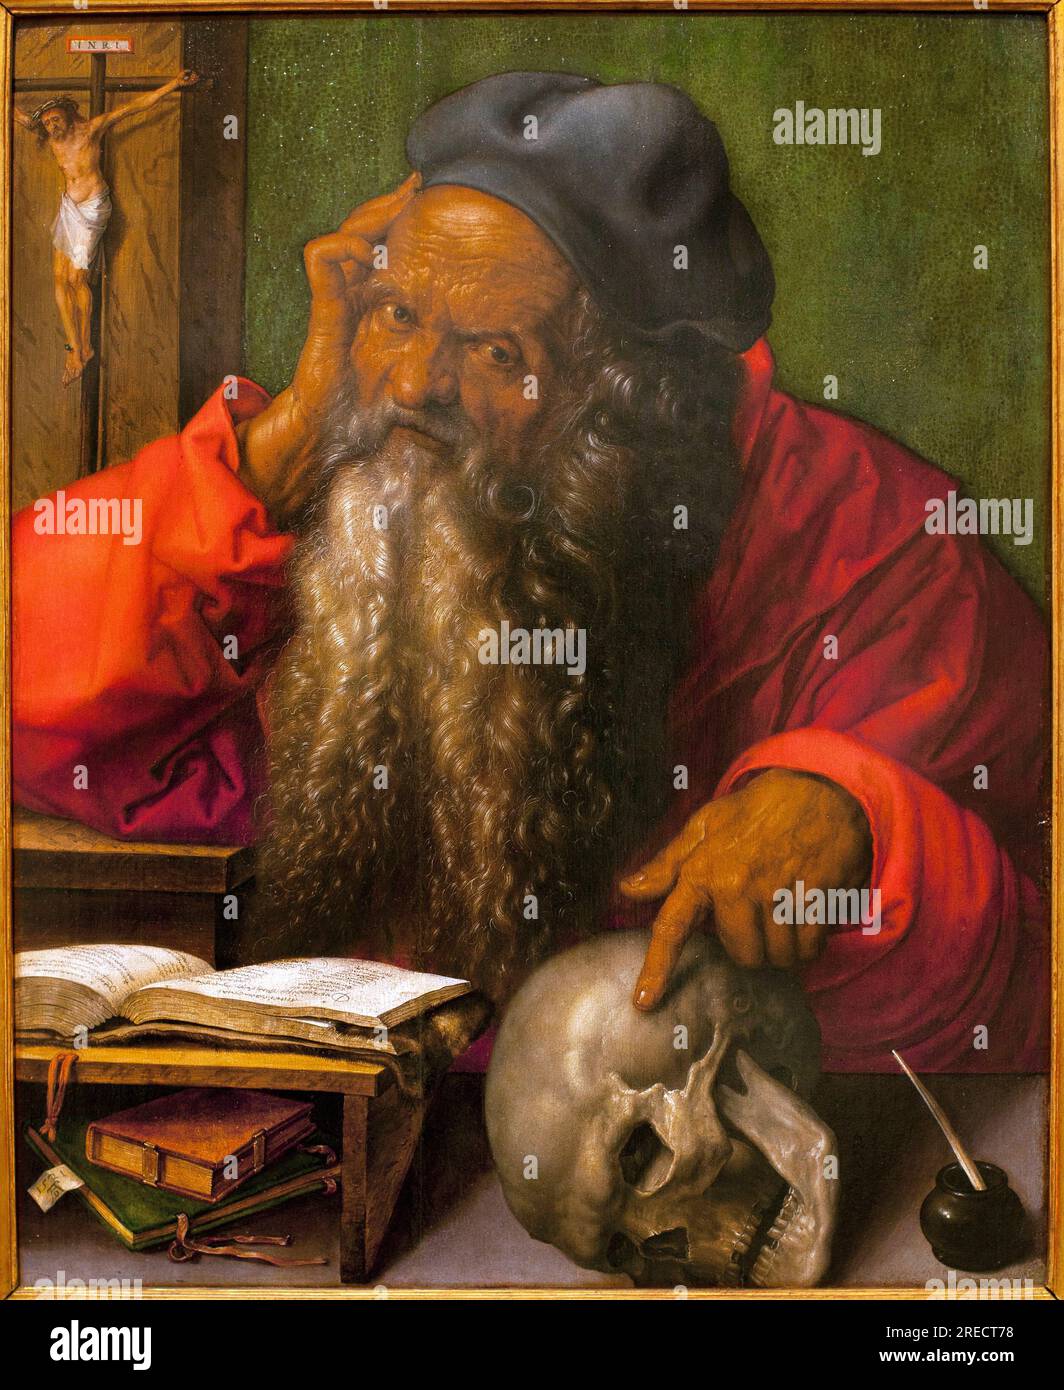 Saint Jerome - Peinture de Albrecht Durer (1471-1528), huile sur bois, 1521 (St Jerome, by Albrecht Durer, oil on panel, 1521) - Musee des Arts antiques de Lisbonne (Portugal) Stock Photo